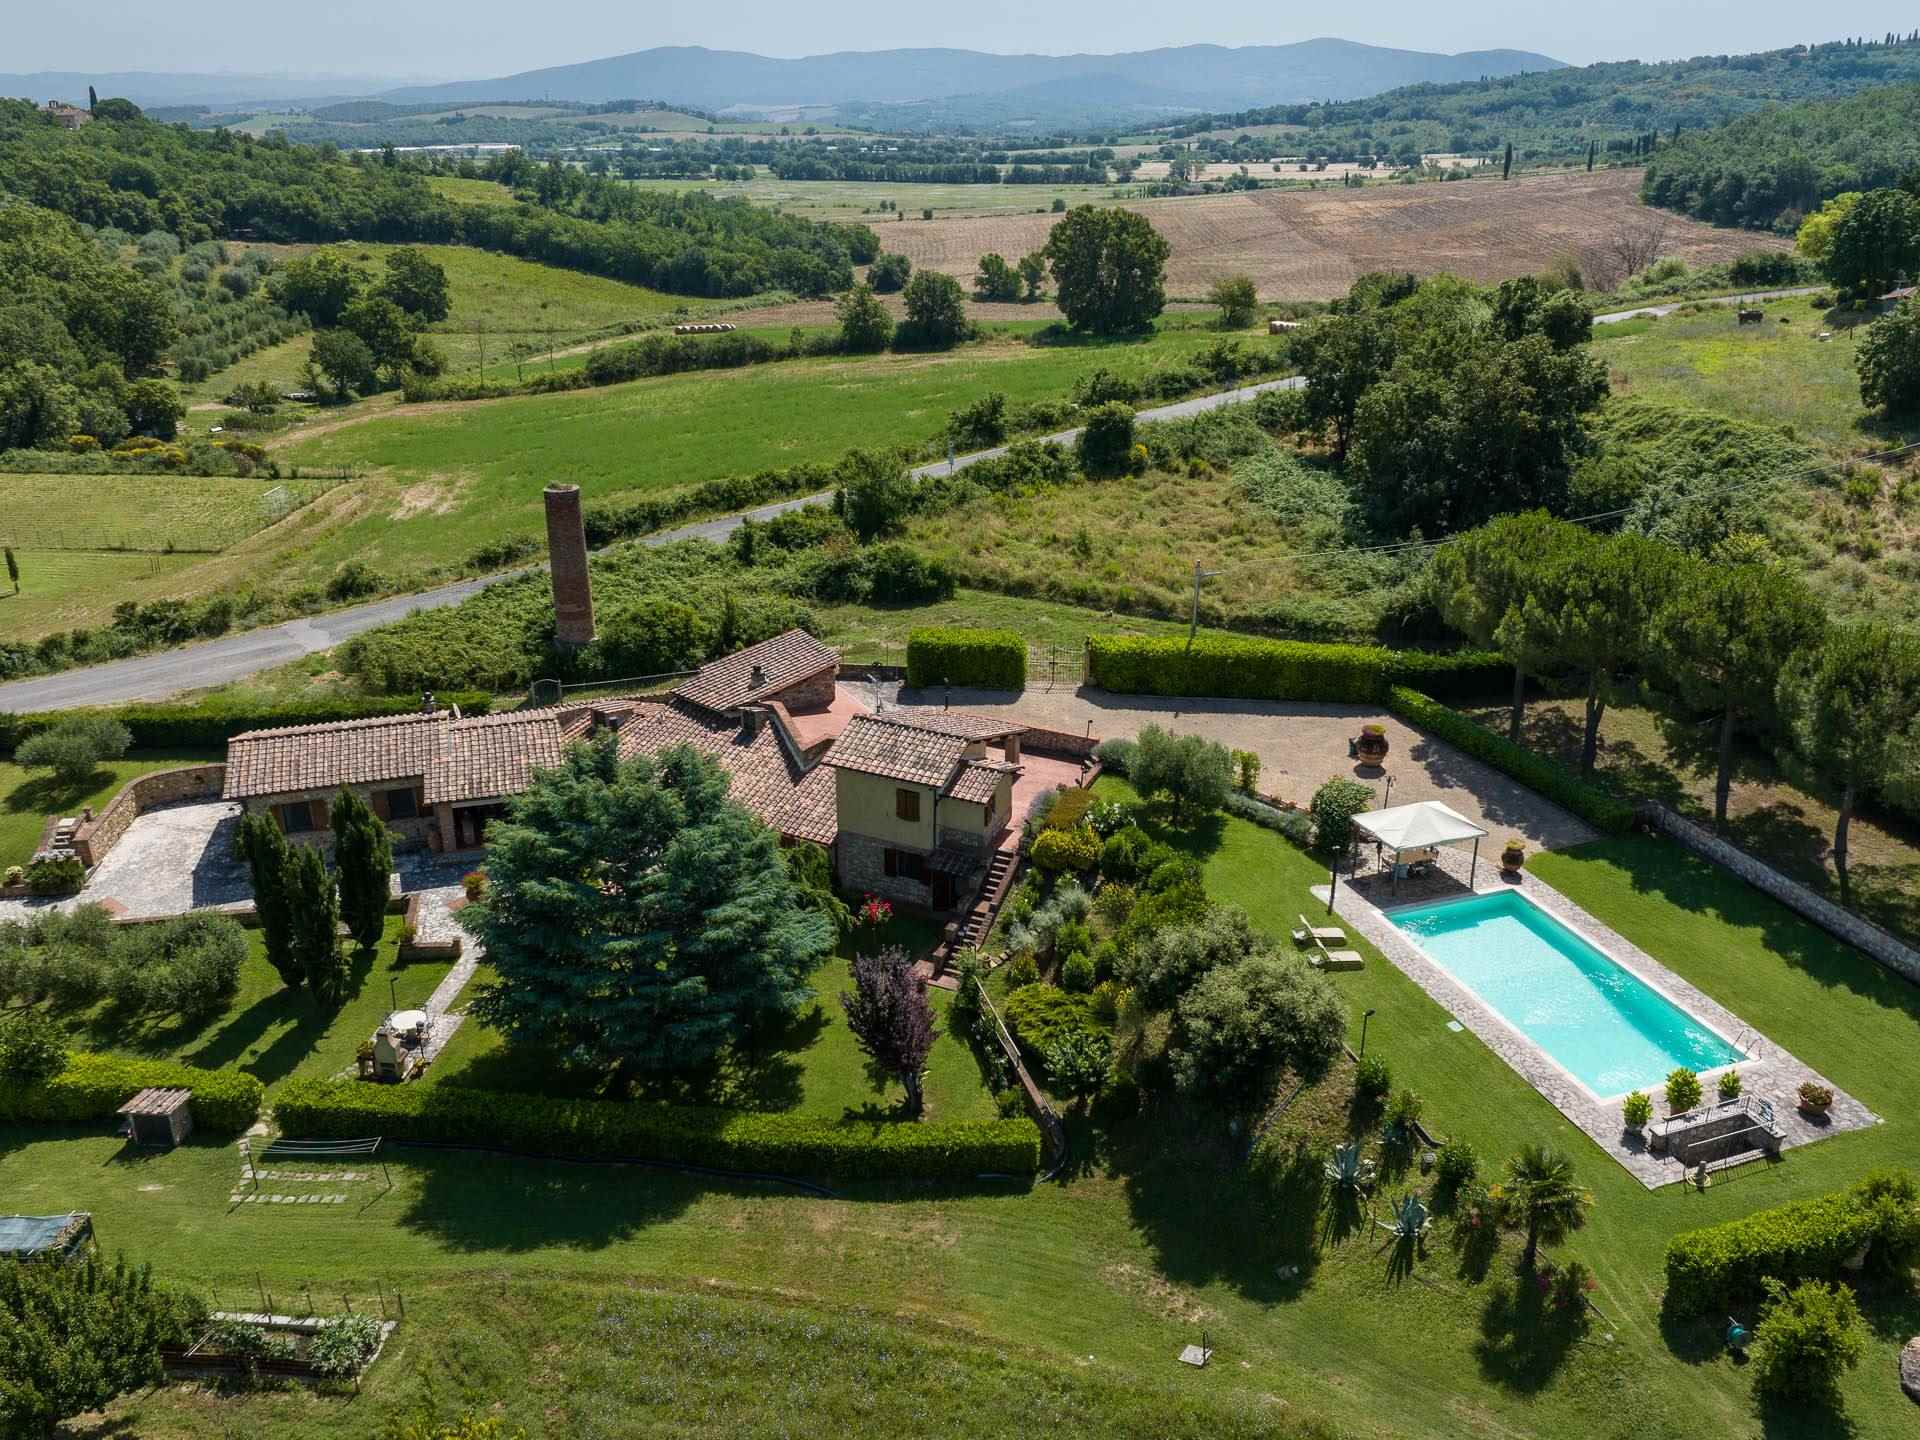 Villa con piscina, giardino e terreno di un ettaro con due laghi in ottima posizione nel comune di Casole d'Elsa a 300 m slm, recuperata dai resti di 